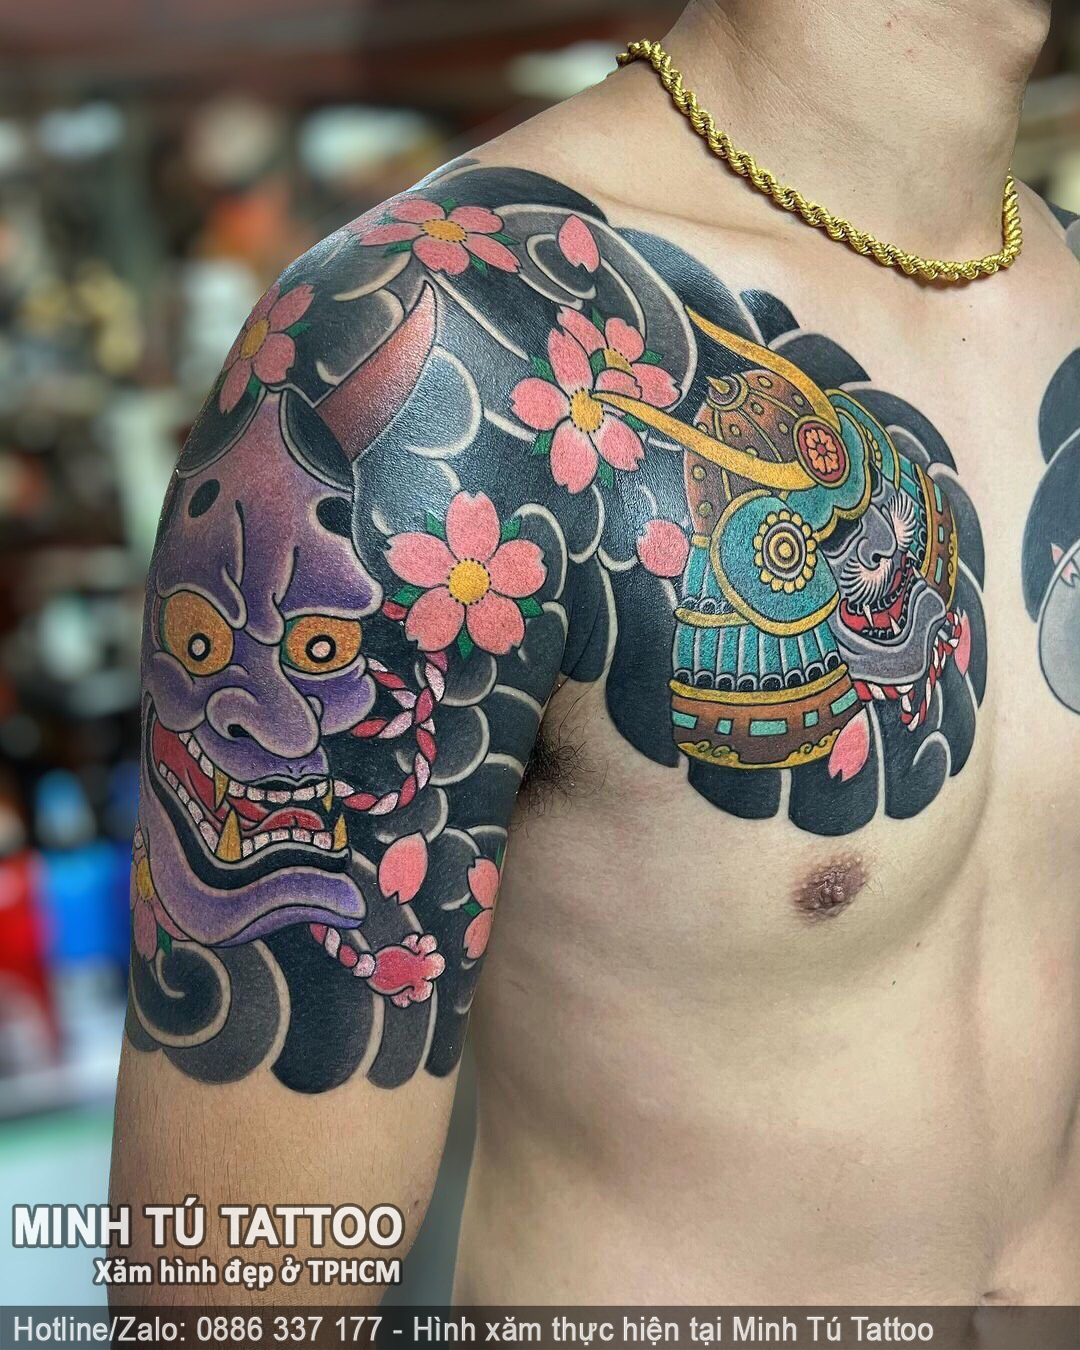 Tác phẩm hình xăm do Minh Tú Tattoo thực hiện 51